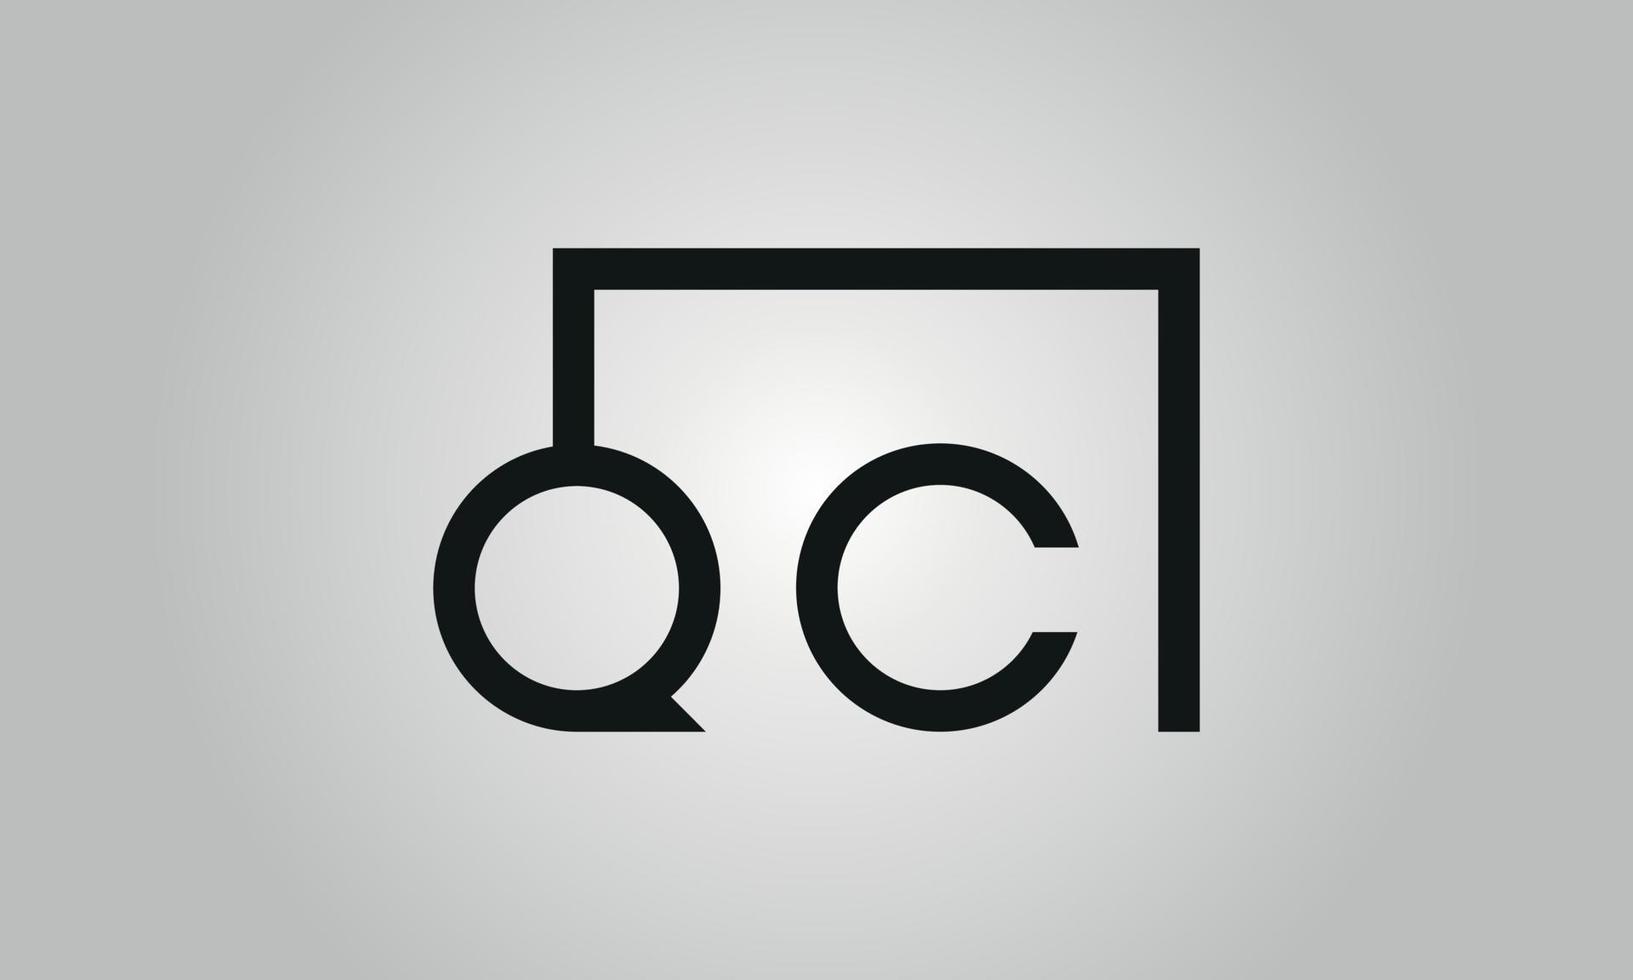 Buchstabe qc-Logo-Design. qc-Logo mit quadratischer Form in schwarzen Farben Vektor kostenlose Vektorvorlage.